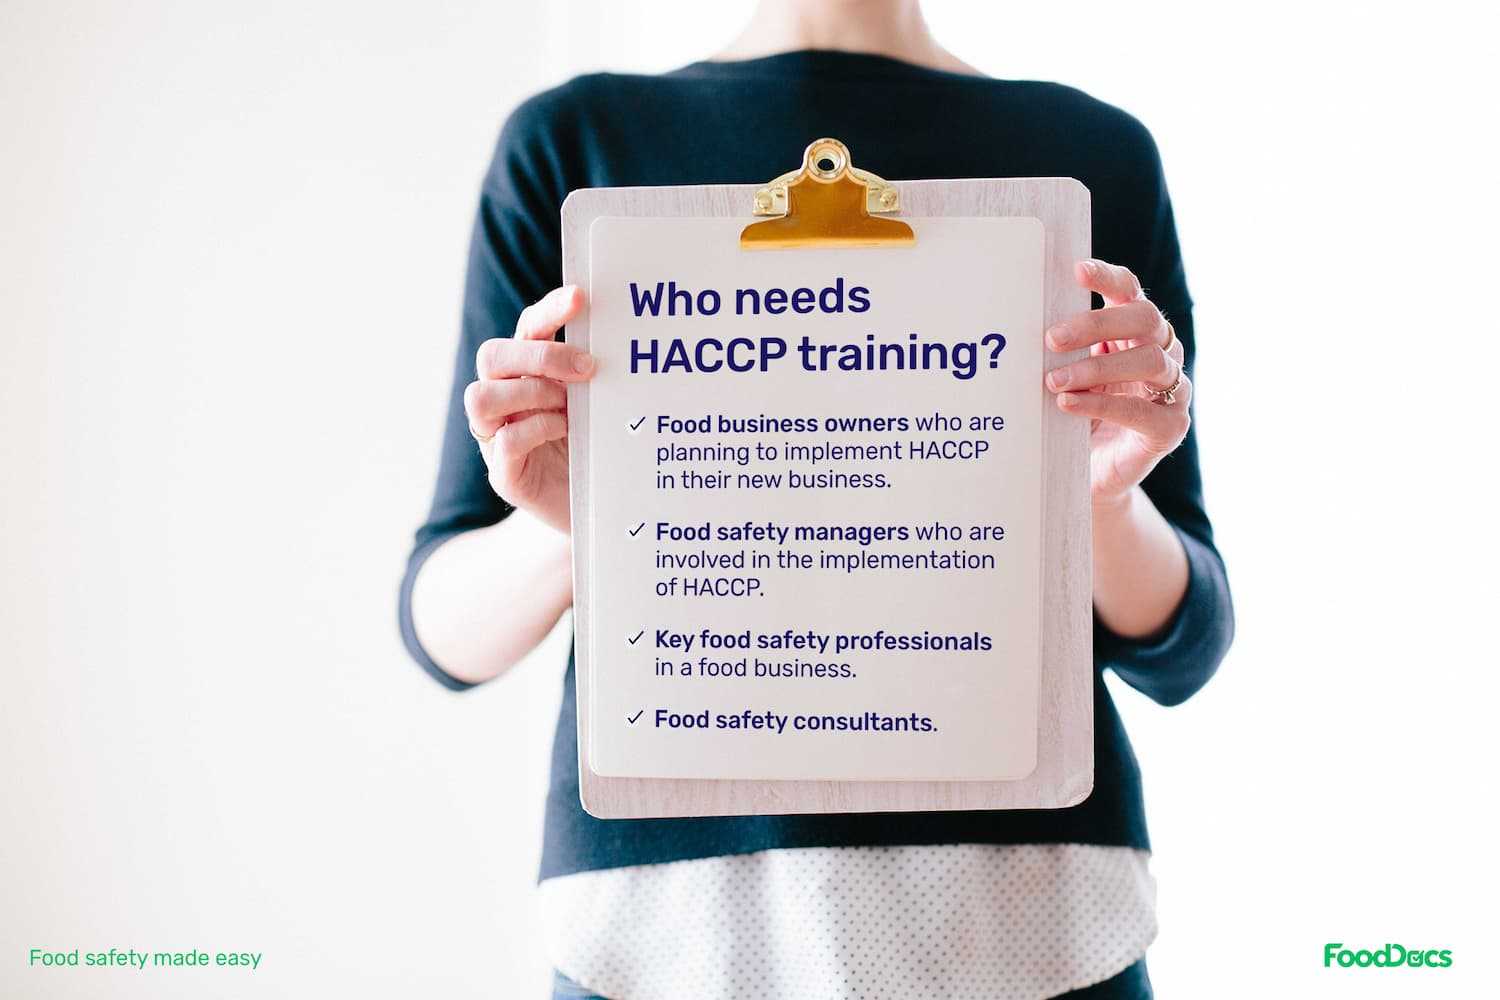 who needs HACCP training